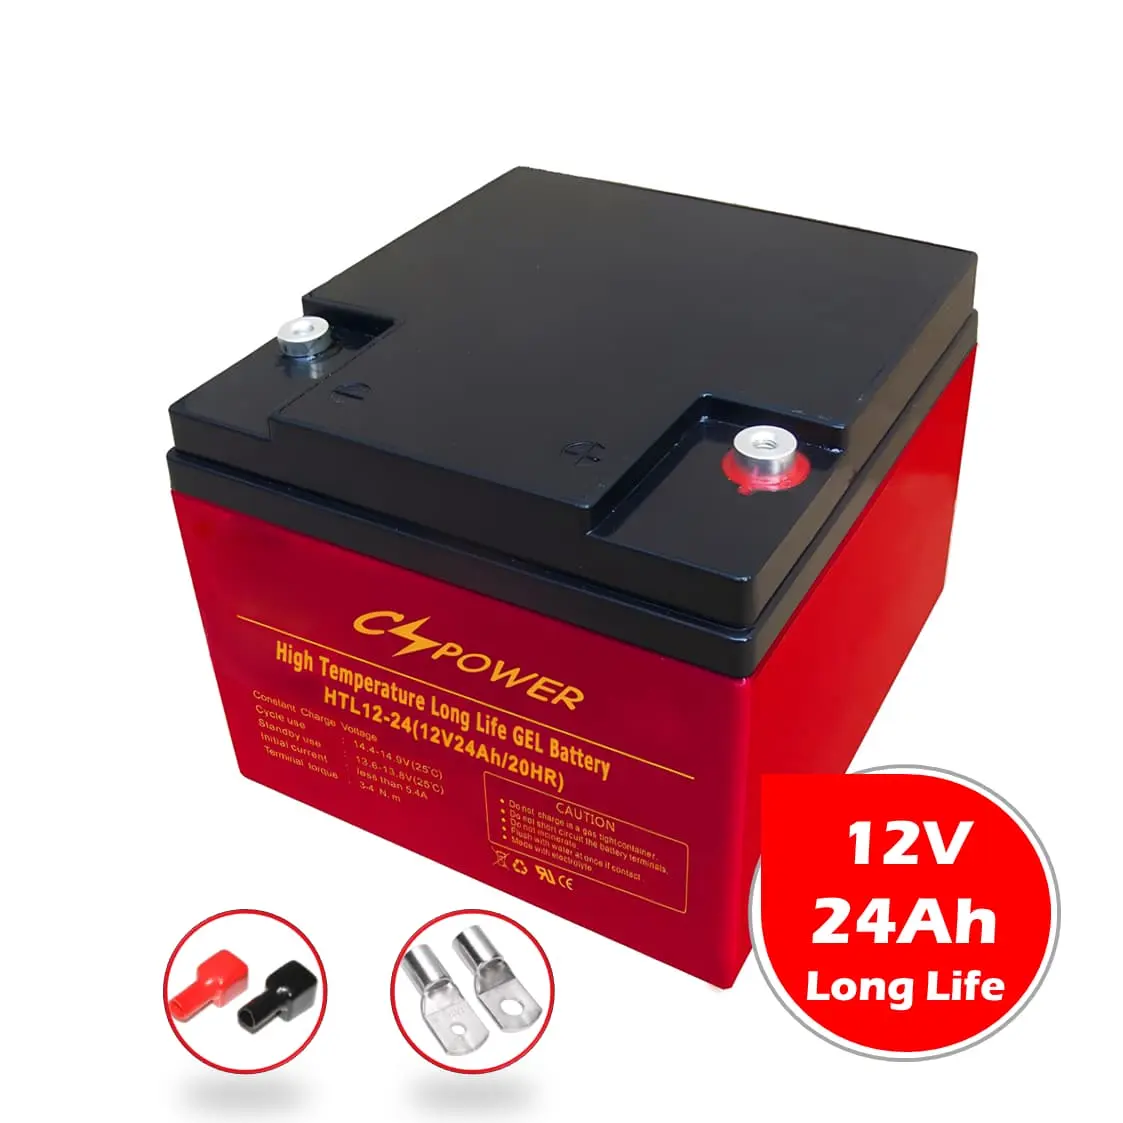 CSPower 12V 24Ah Long Life GEL Battery for Power Tools, UPS China Supply VS: Rolls HTL12-24 DAR